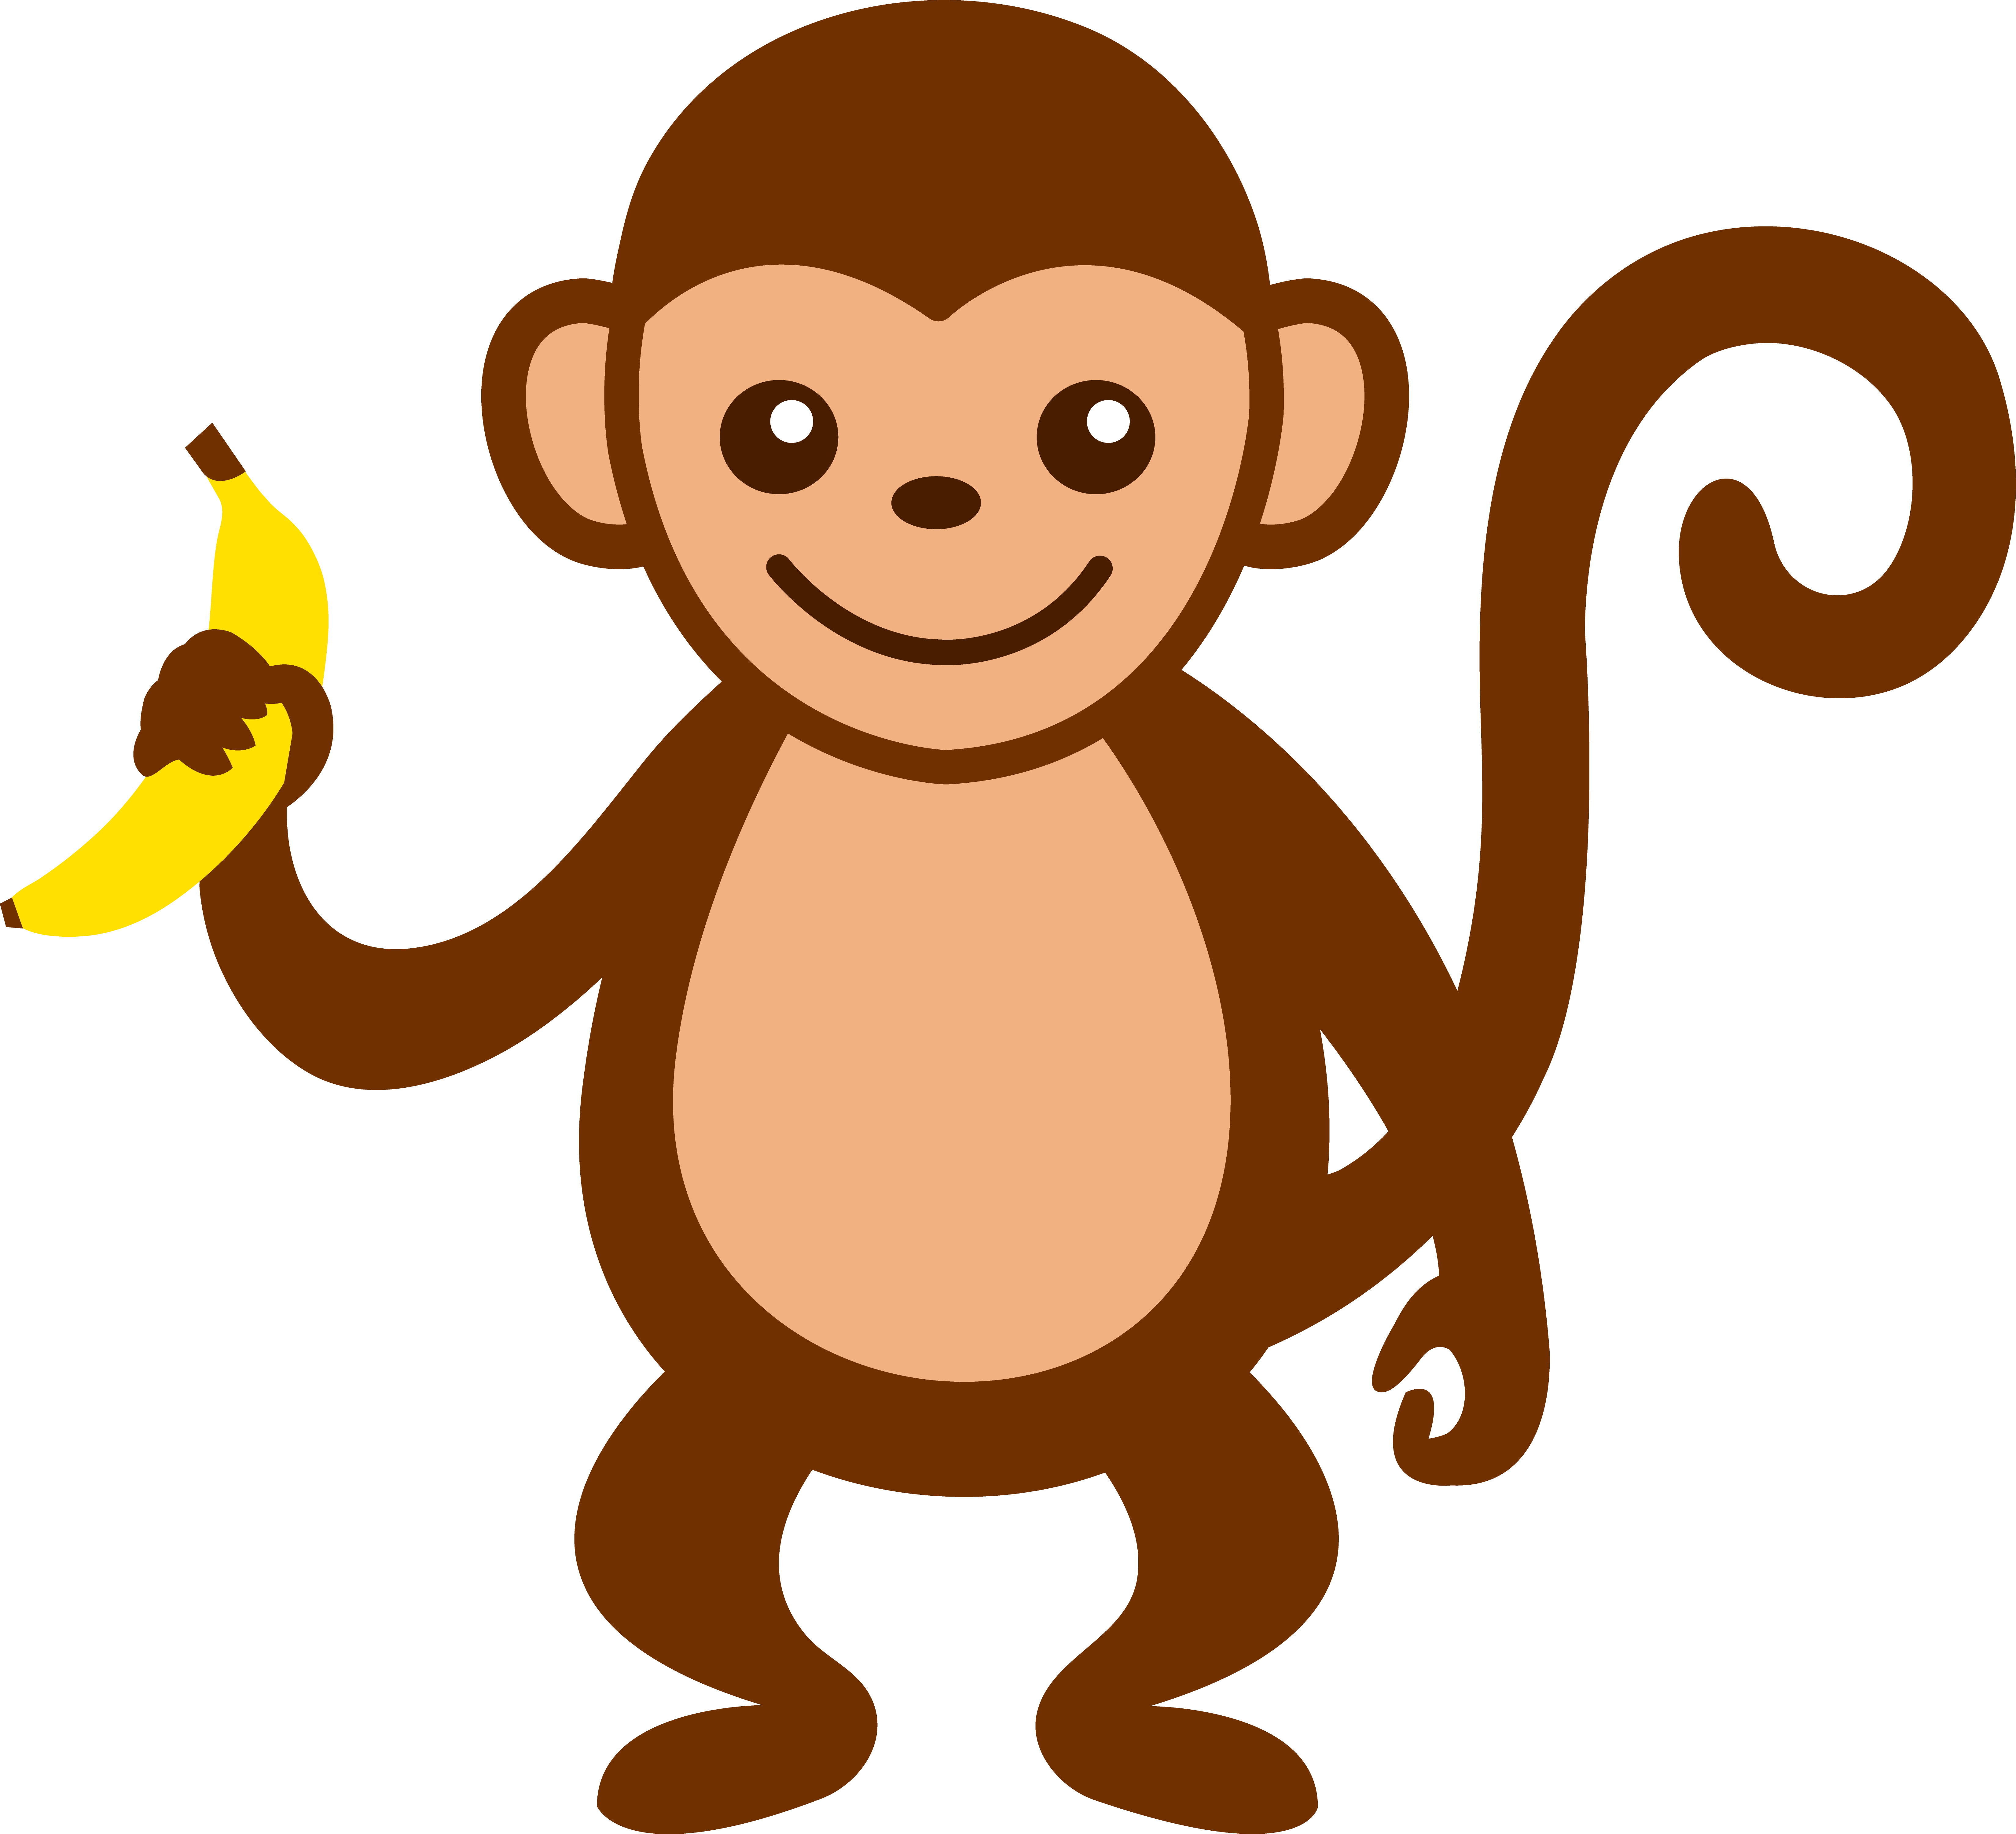 Monkey cartoon clip art